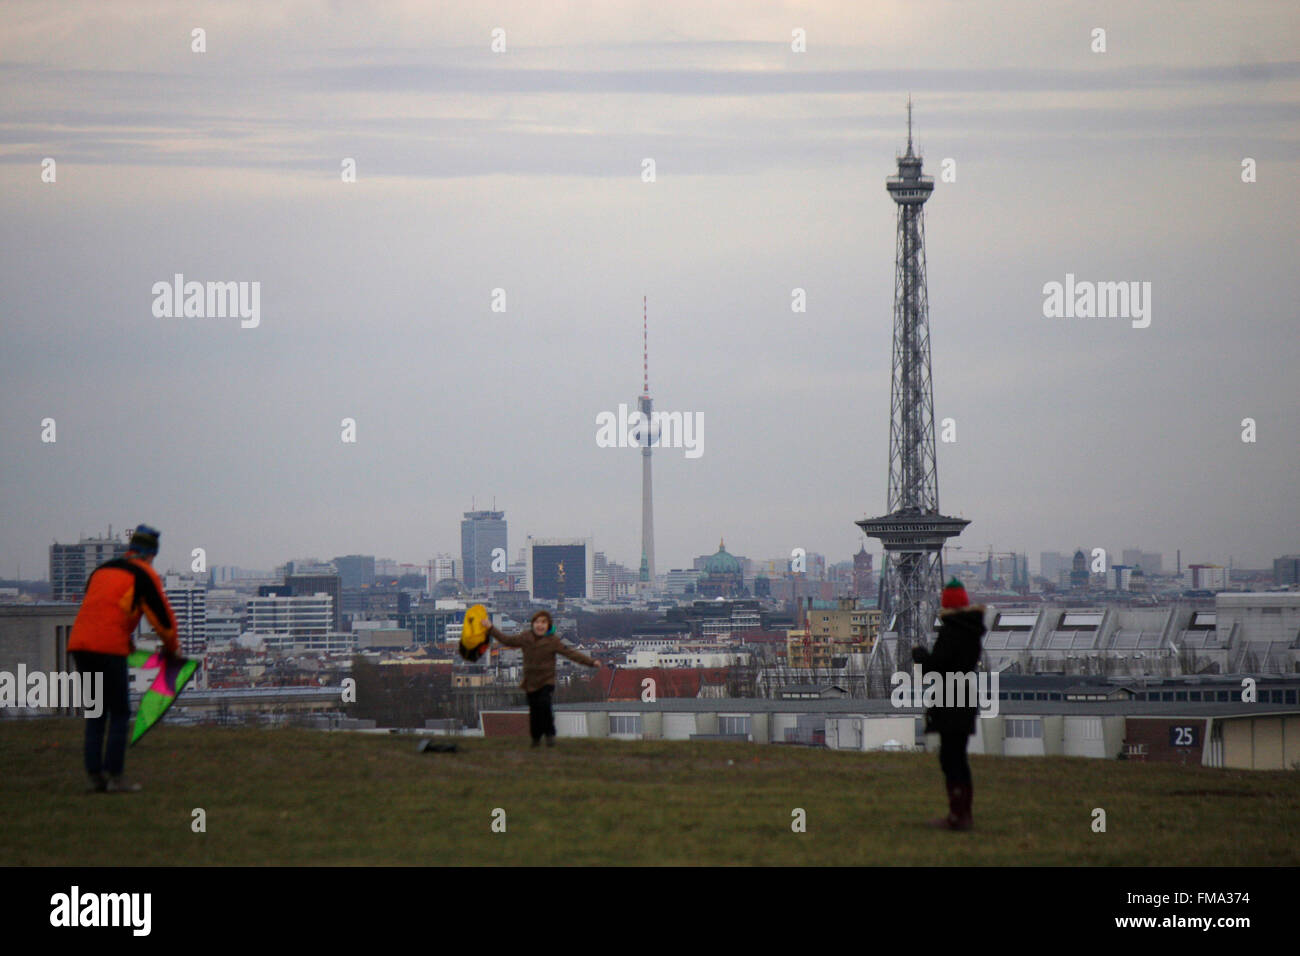 die Skyline Berlins mit dem Fernsehturm und dem Funkturm vom Teufelsberg aus gesehen, Berlin. Stock Photo